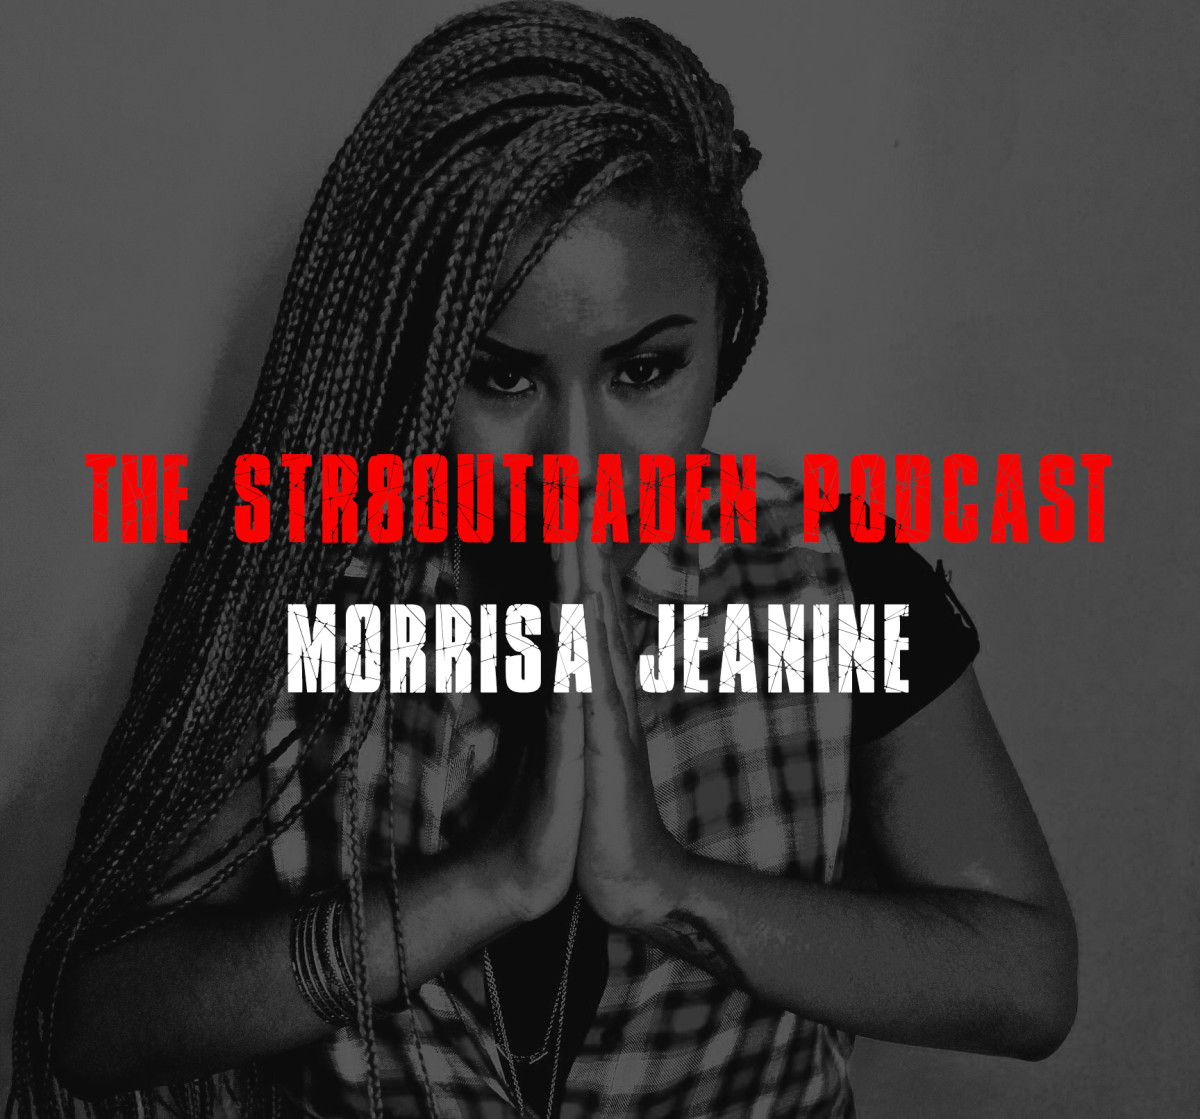 morrisa jeanine str8outdaden podcast 2